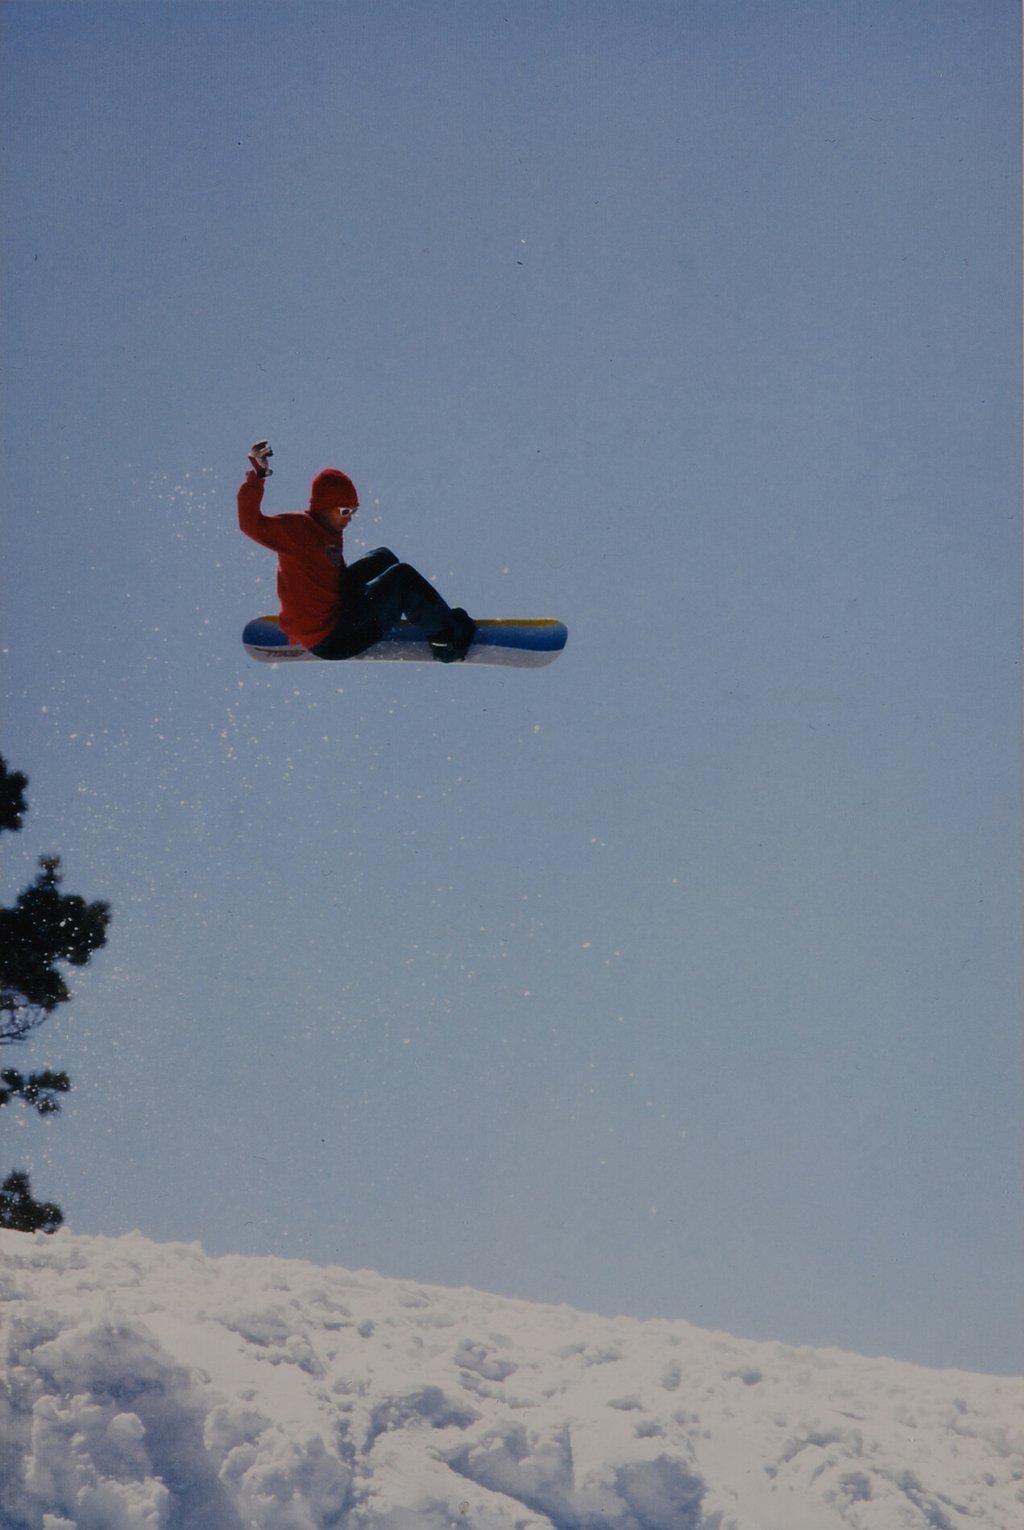 Mount Rose, USA, 1996